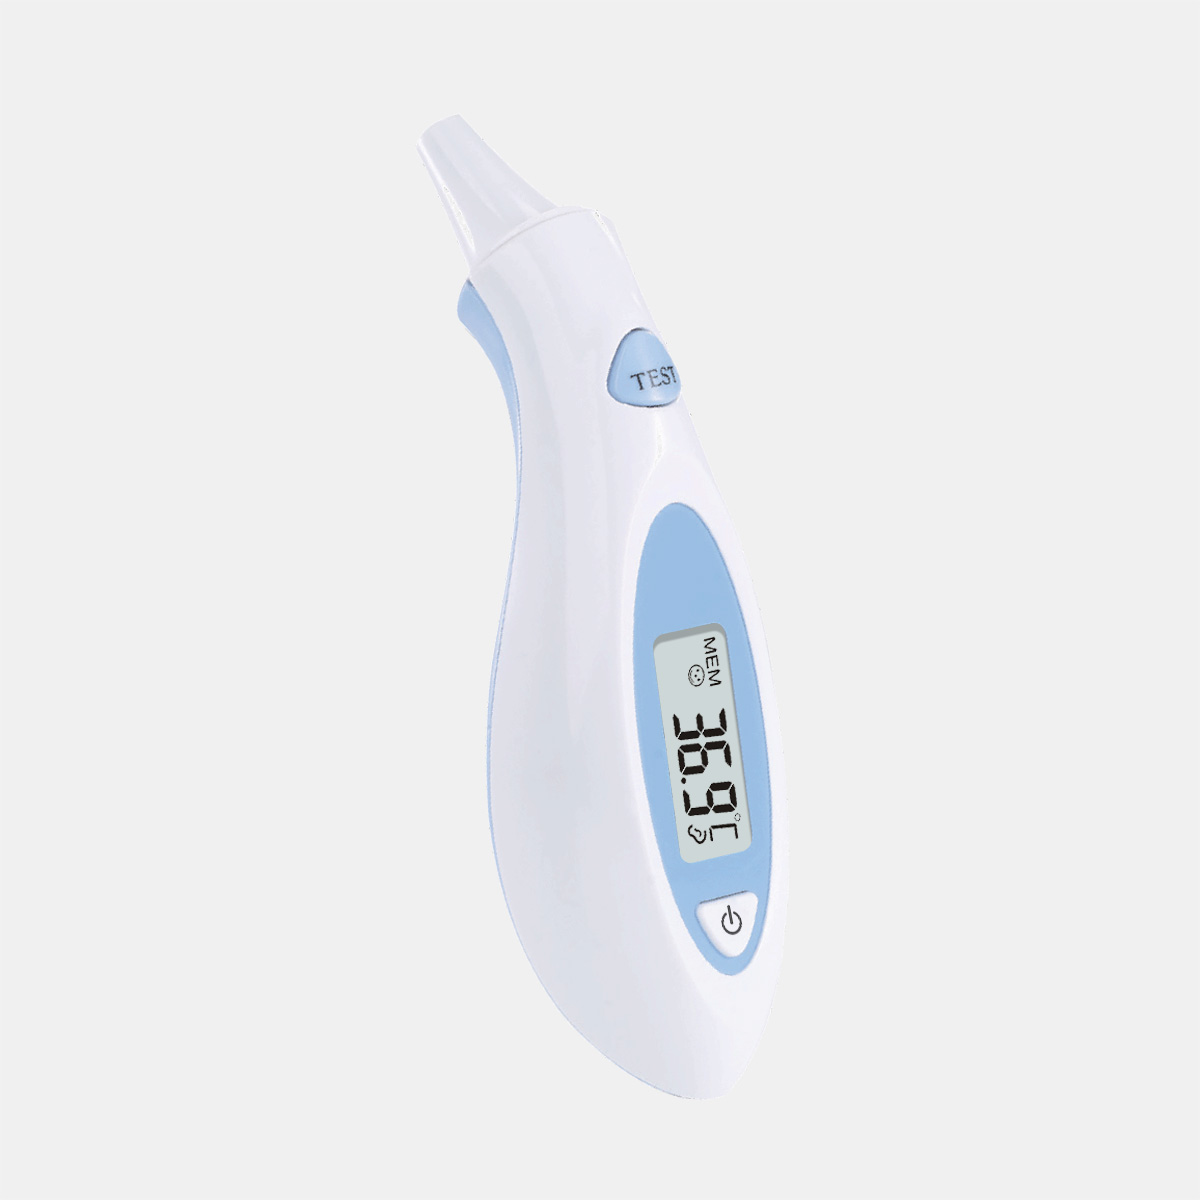 Sejoy Home Paké Dasar Ceuli Thermometer pikeun Baby Infrabeureum Demam Thermometer CE MDR persetujuan